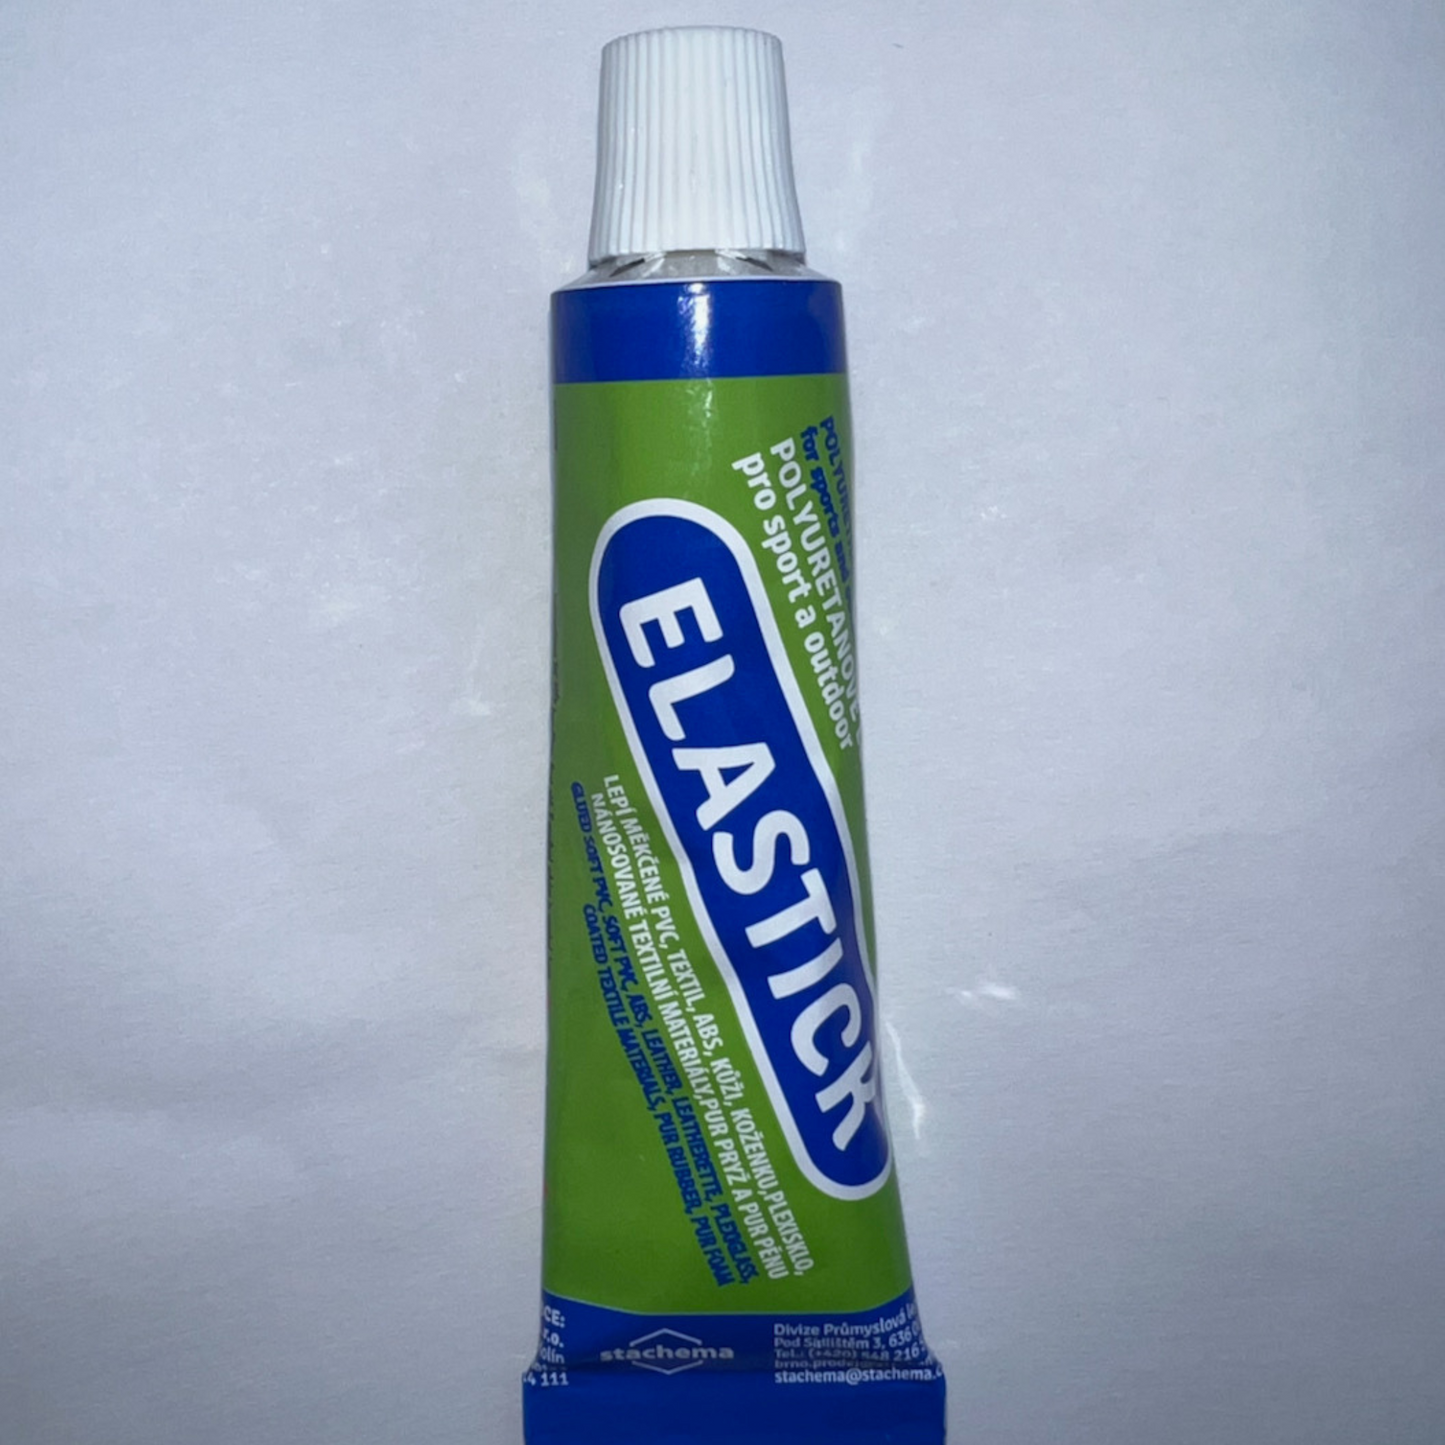 ELASTICK glue